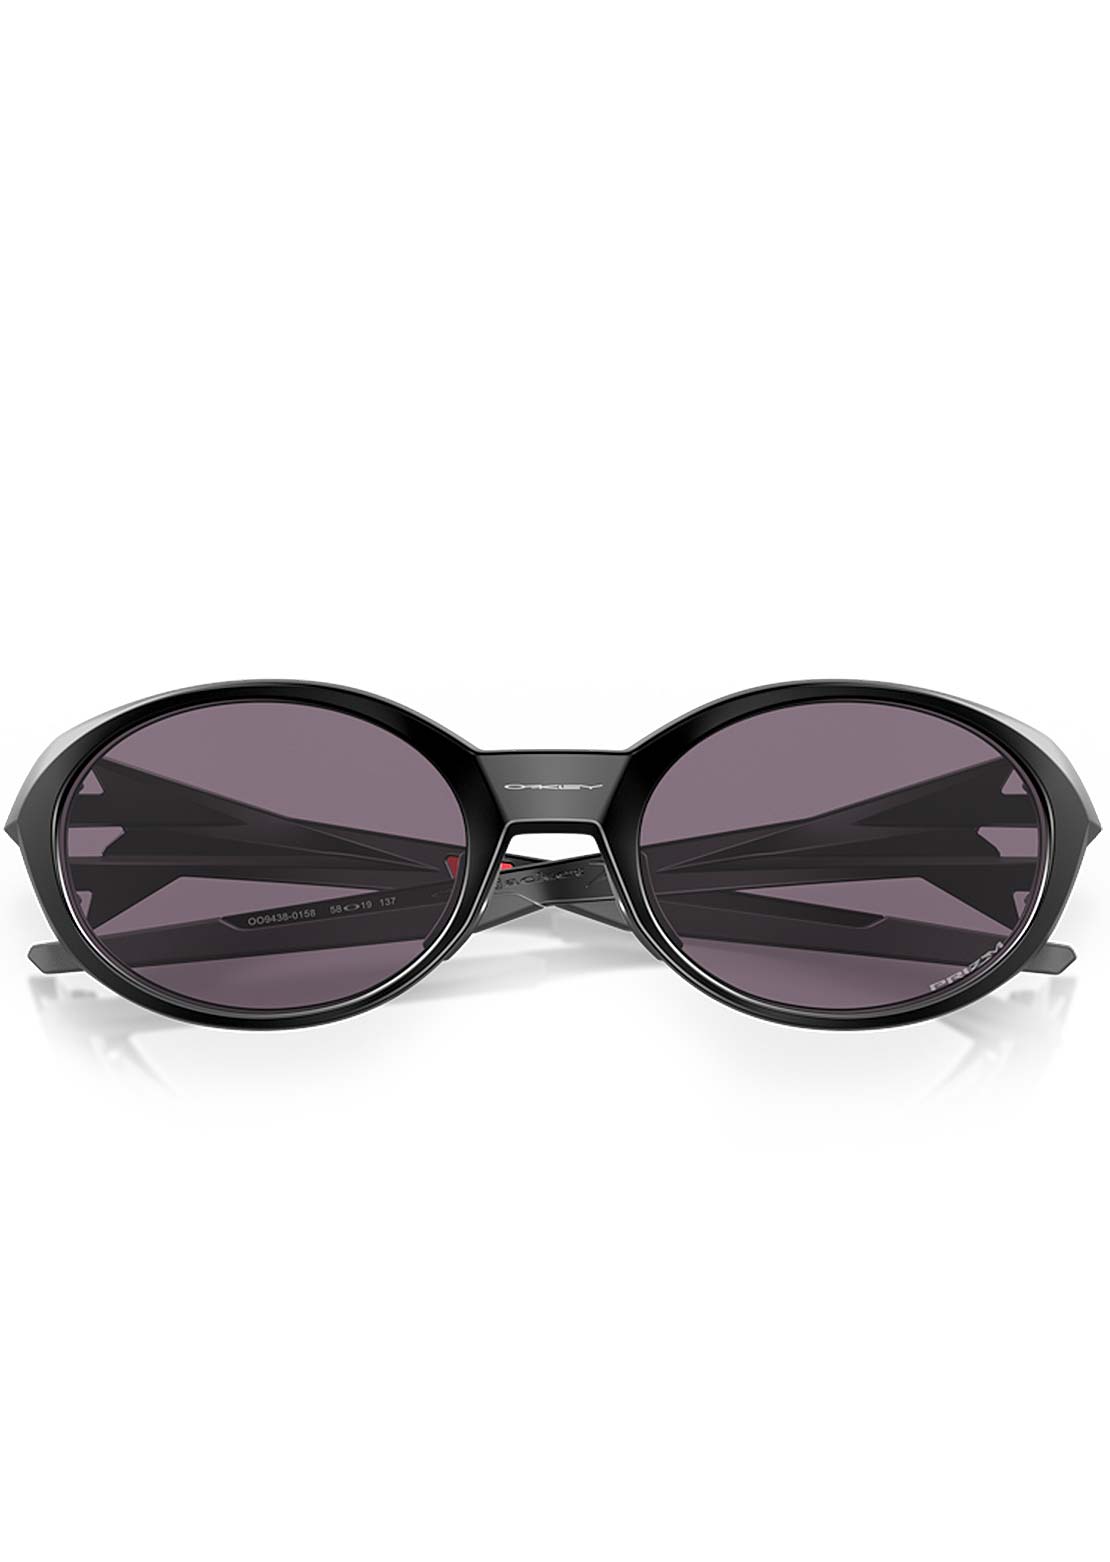 Oakley Men's Eye Jacket Redux Sunglasses - PRFO Sports